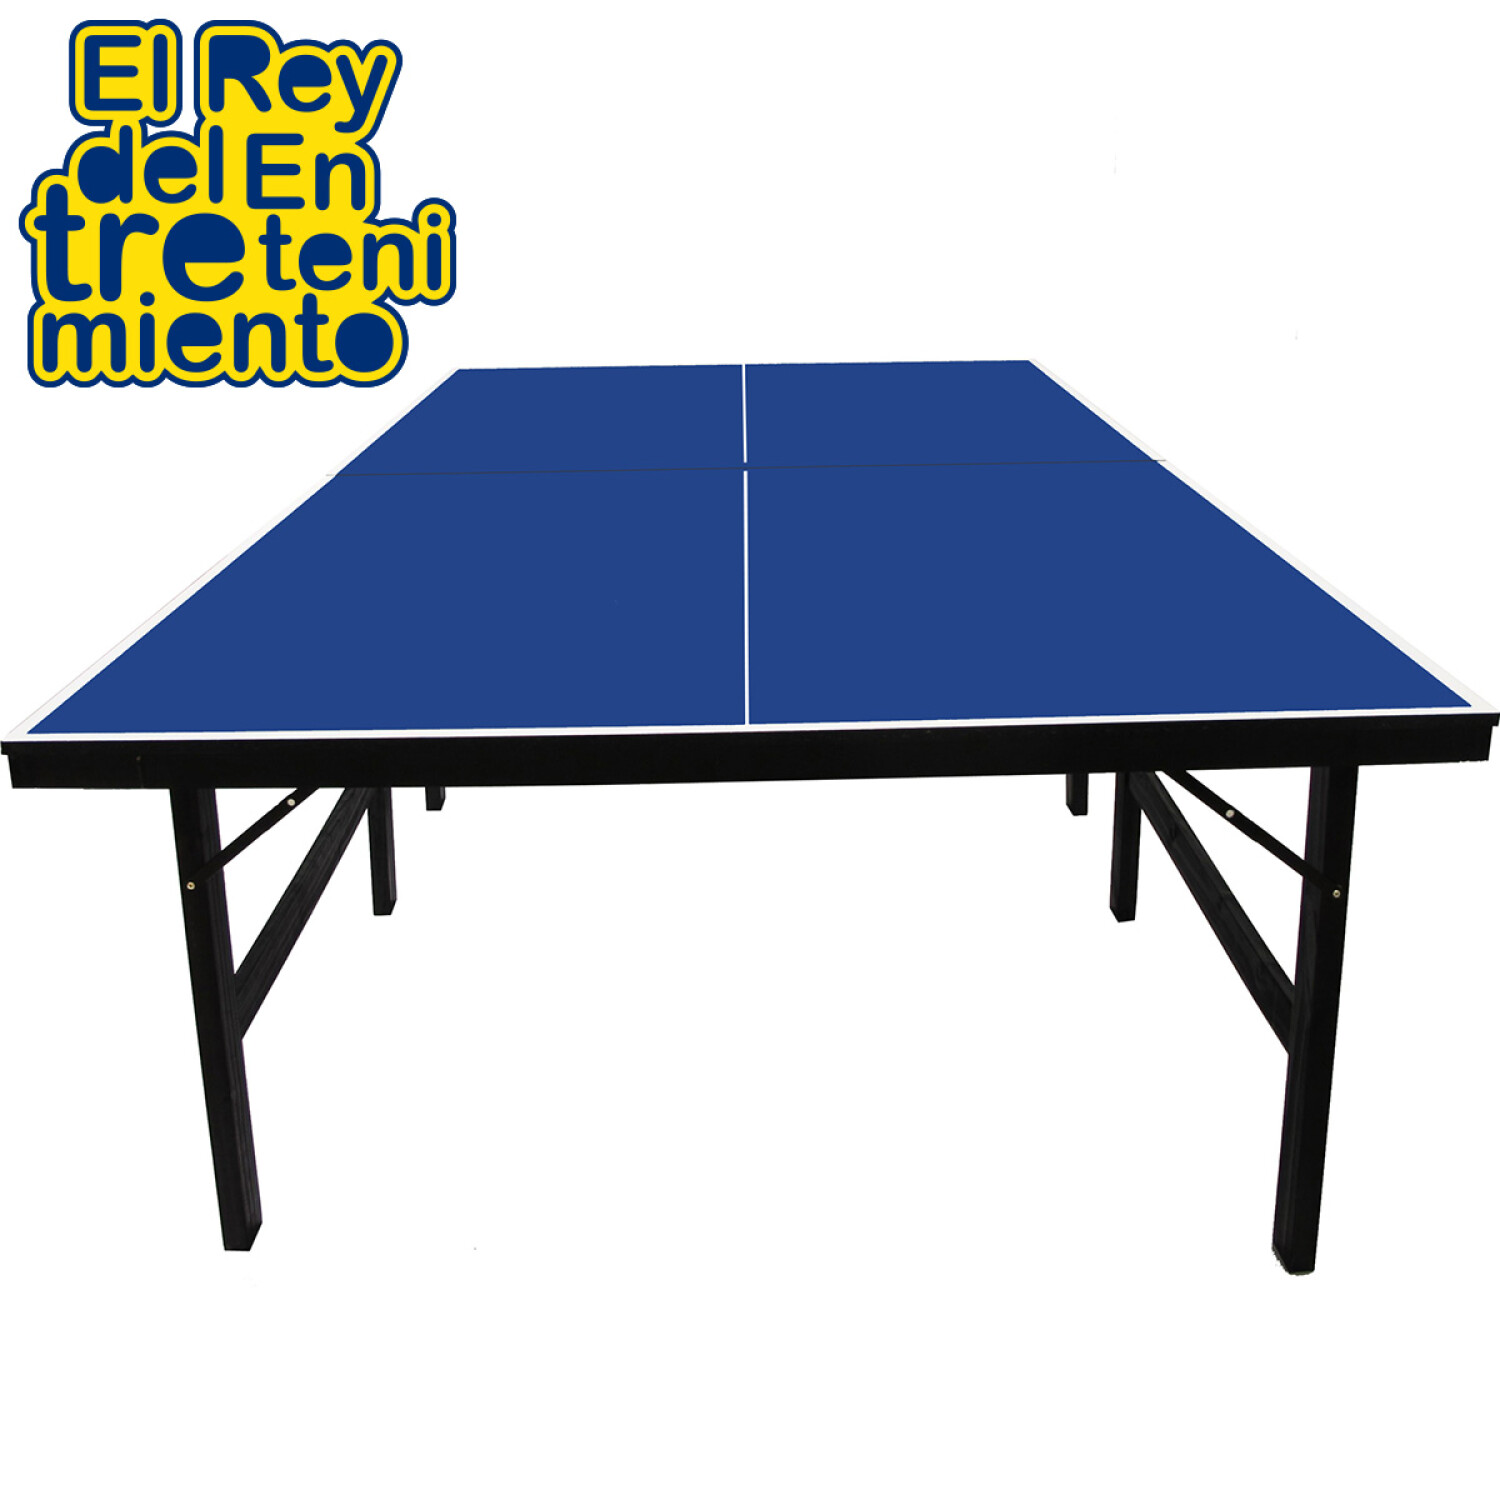 Mesa de ping pong plegable profesional - Emprendesport spa